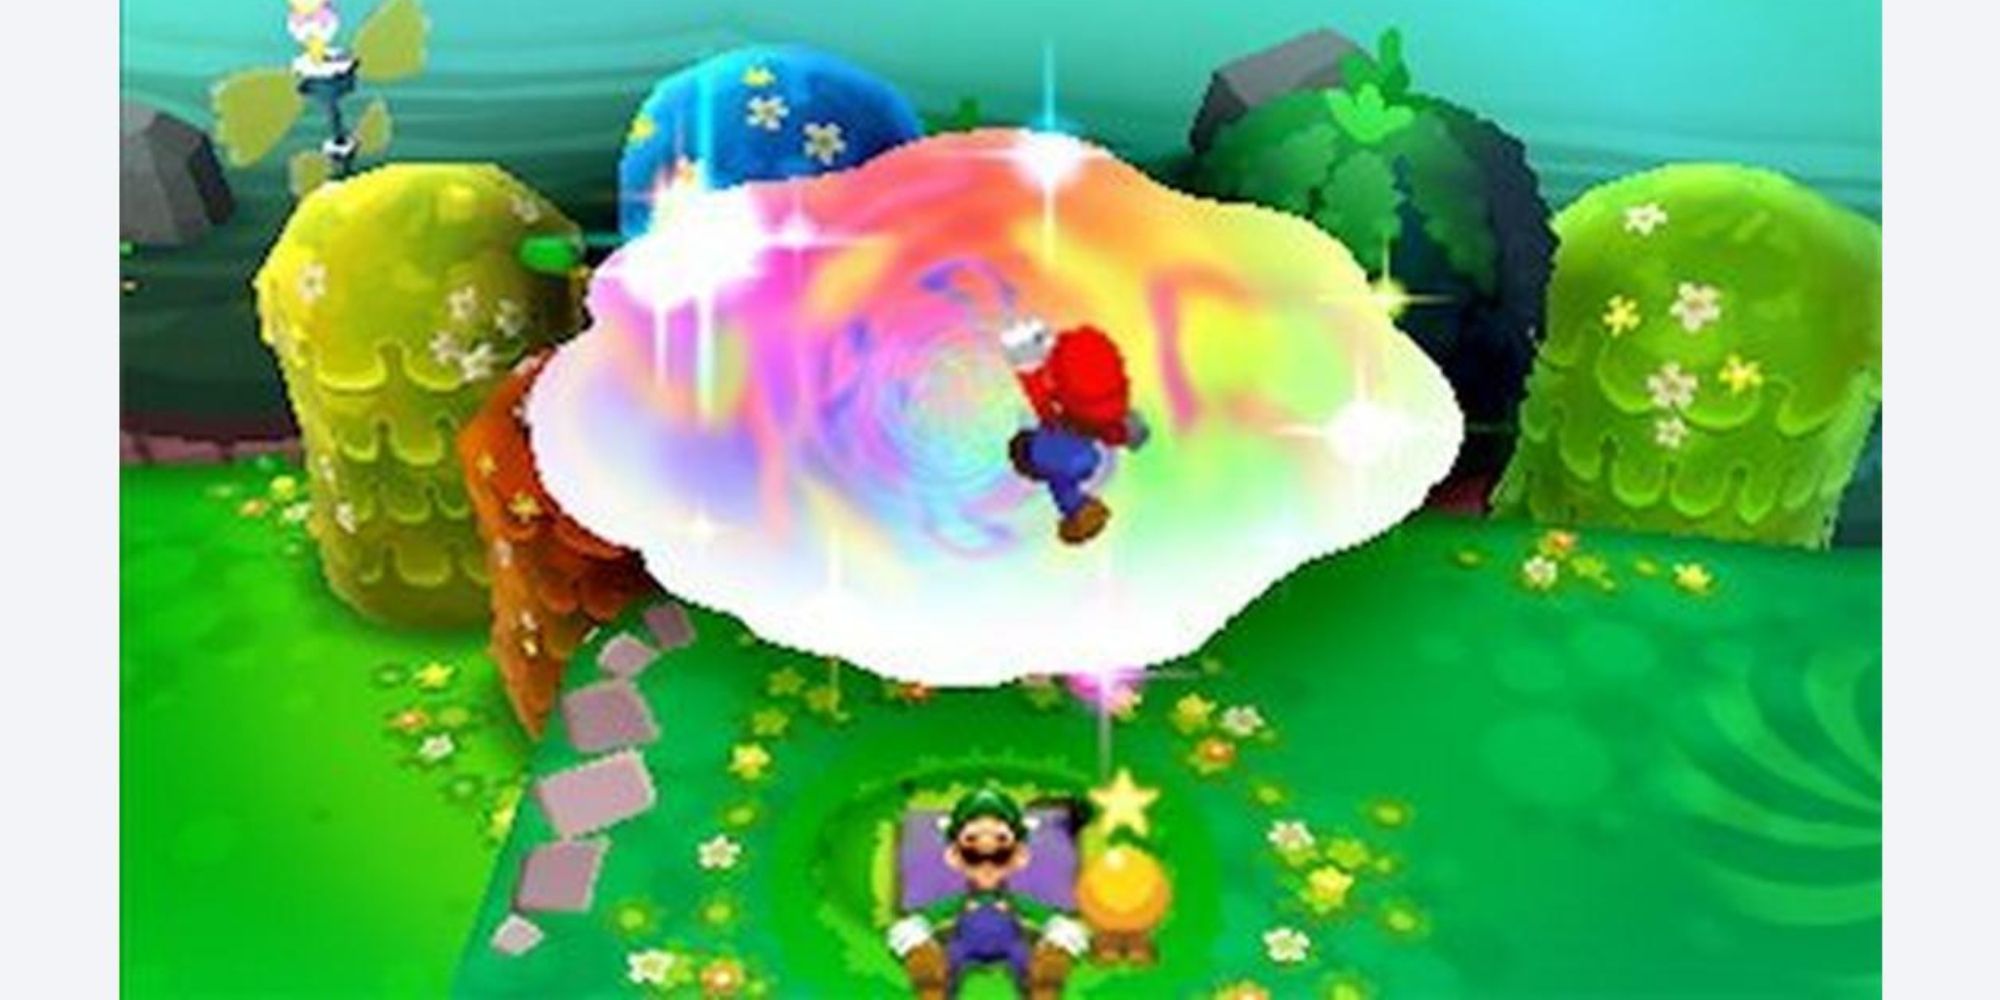 Mario jumping into Luigi's dream